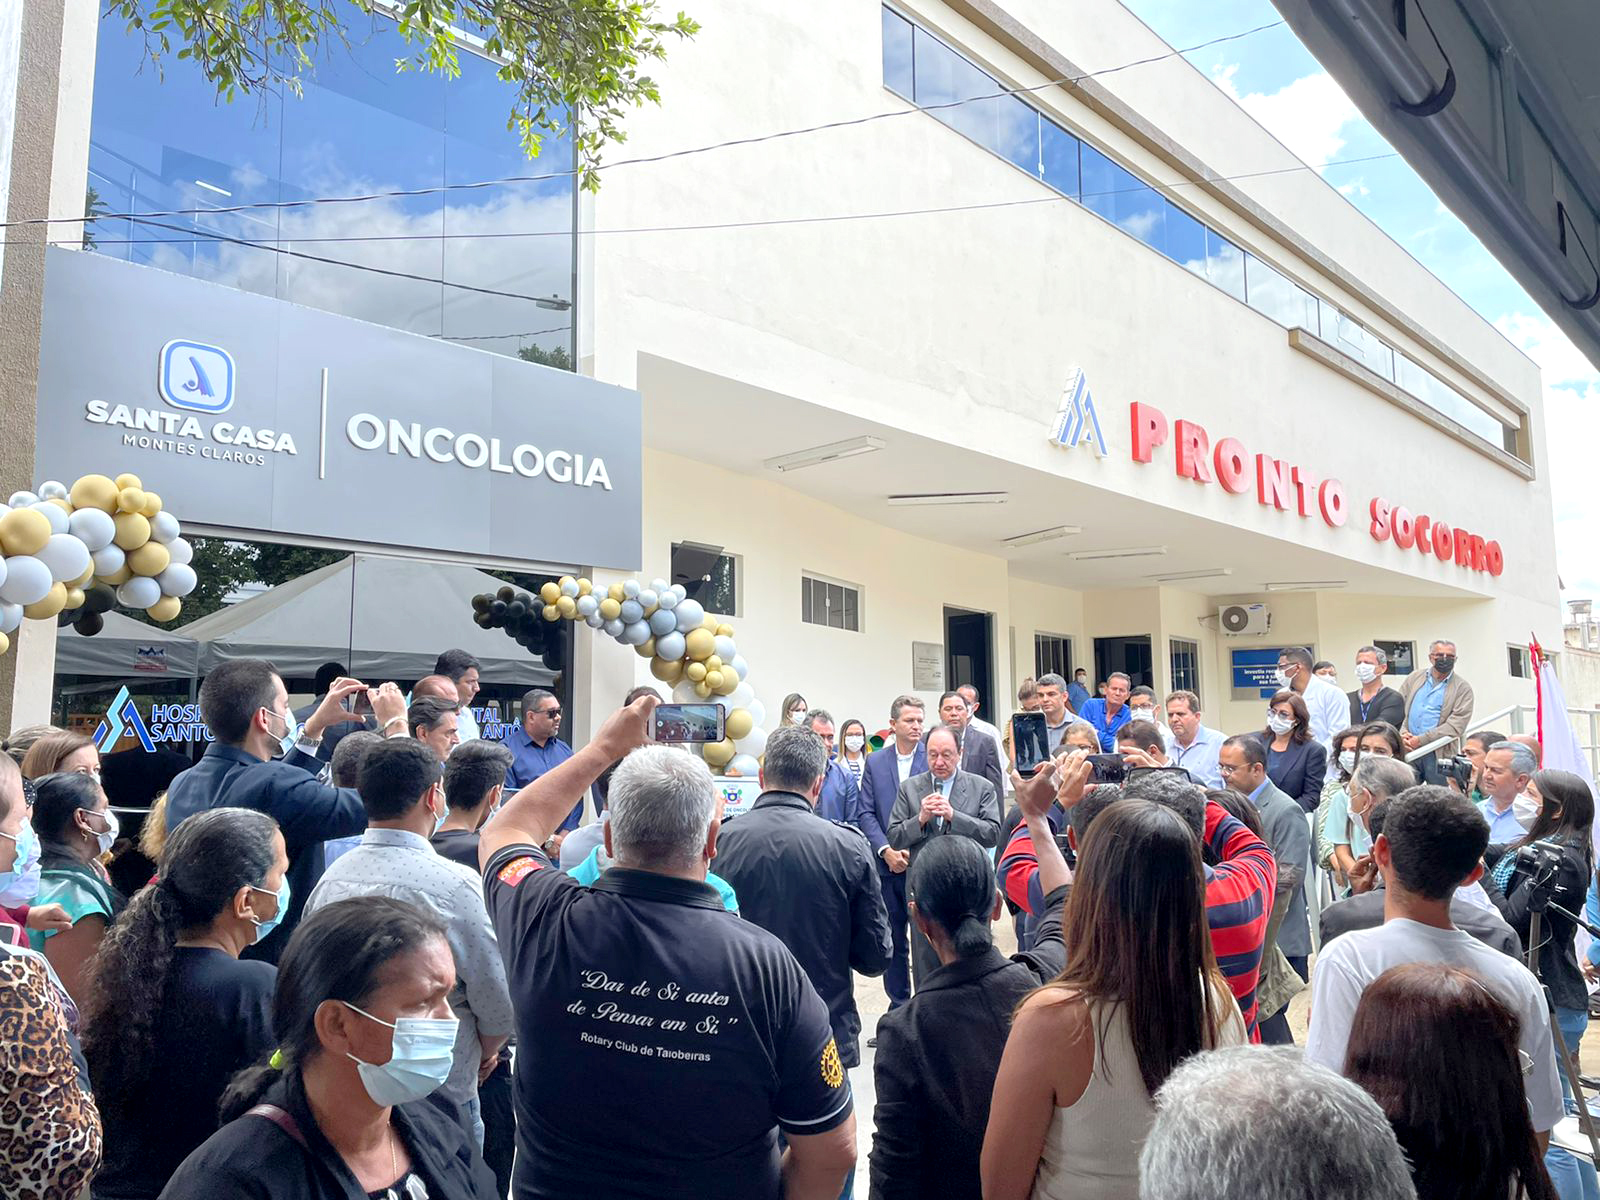 Santa Casa Montes Claros e Hospital Santo Antônio inauguram Serviço de Oncologia